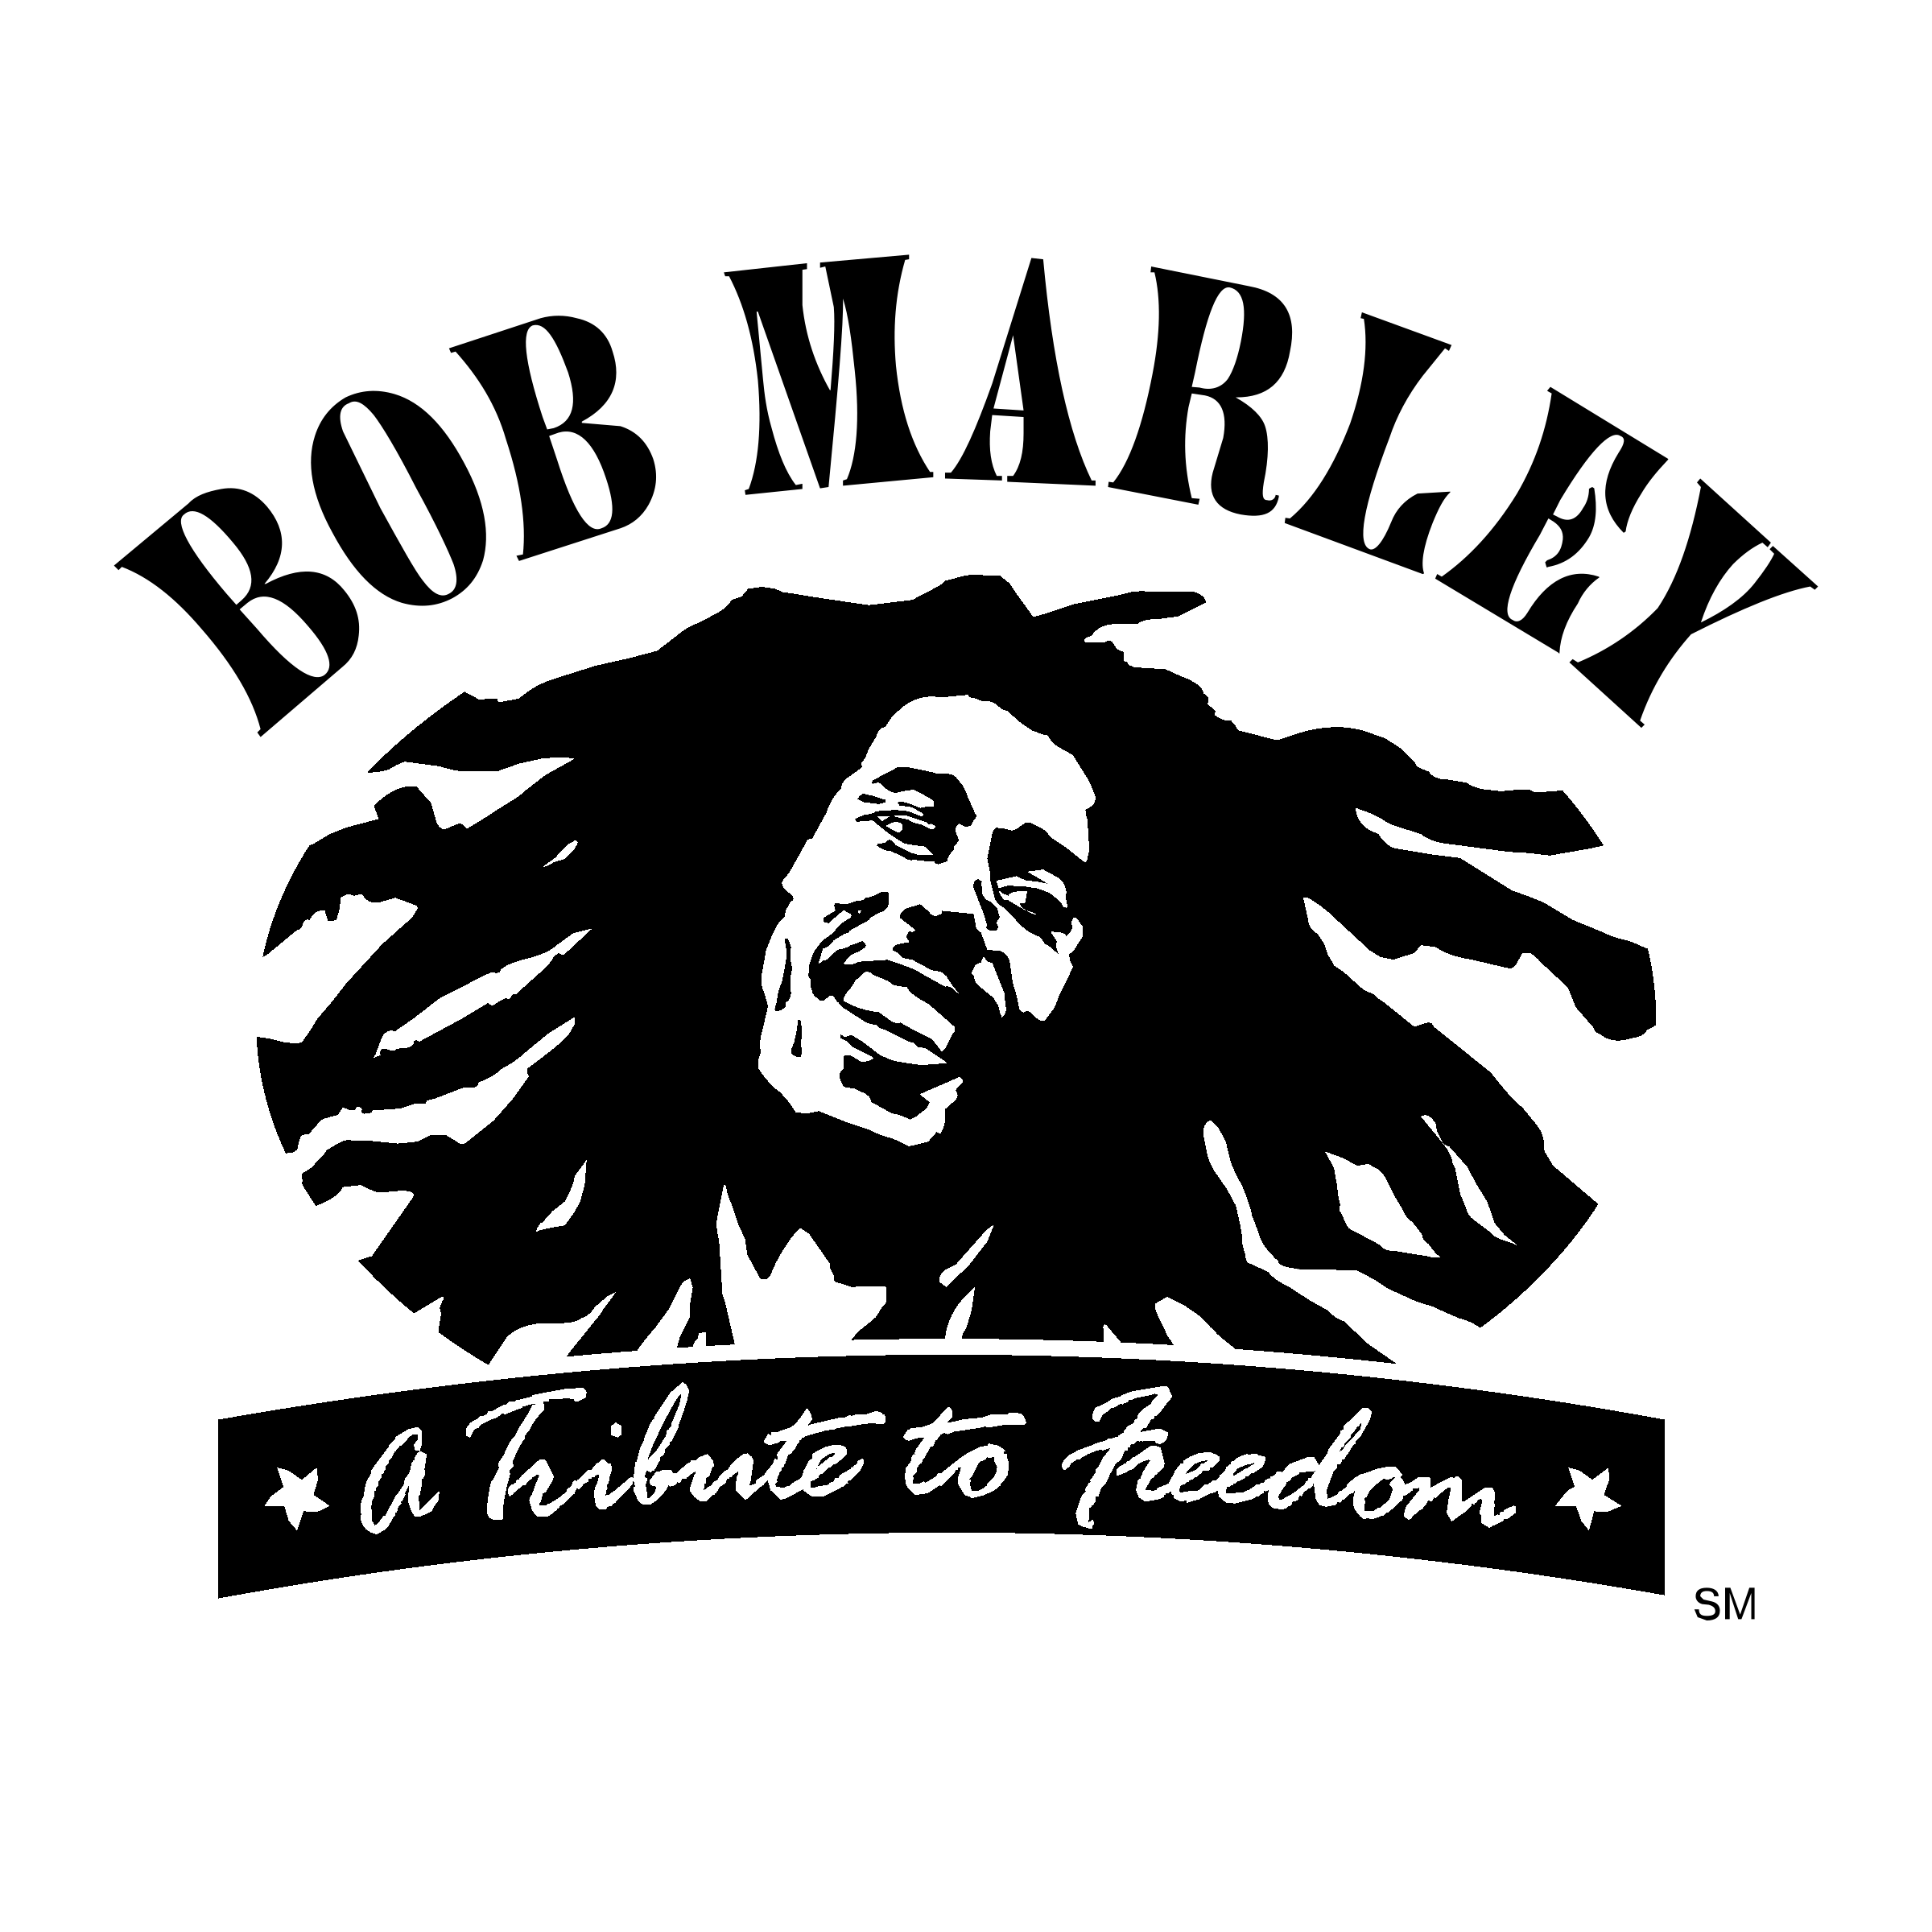 Bob Marley PNG HD Image